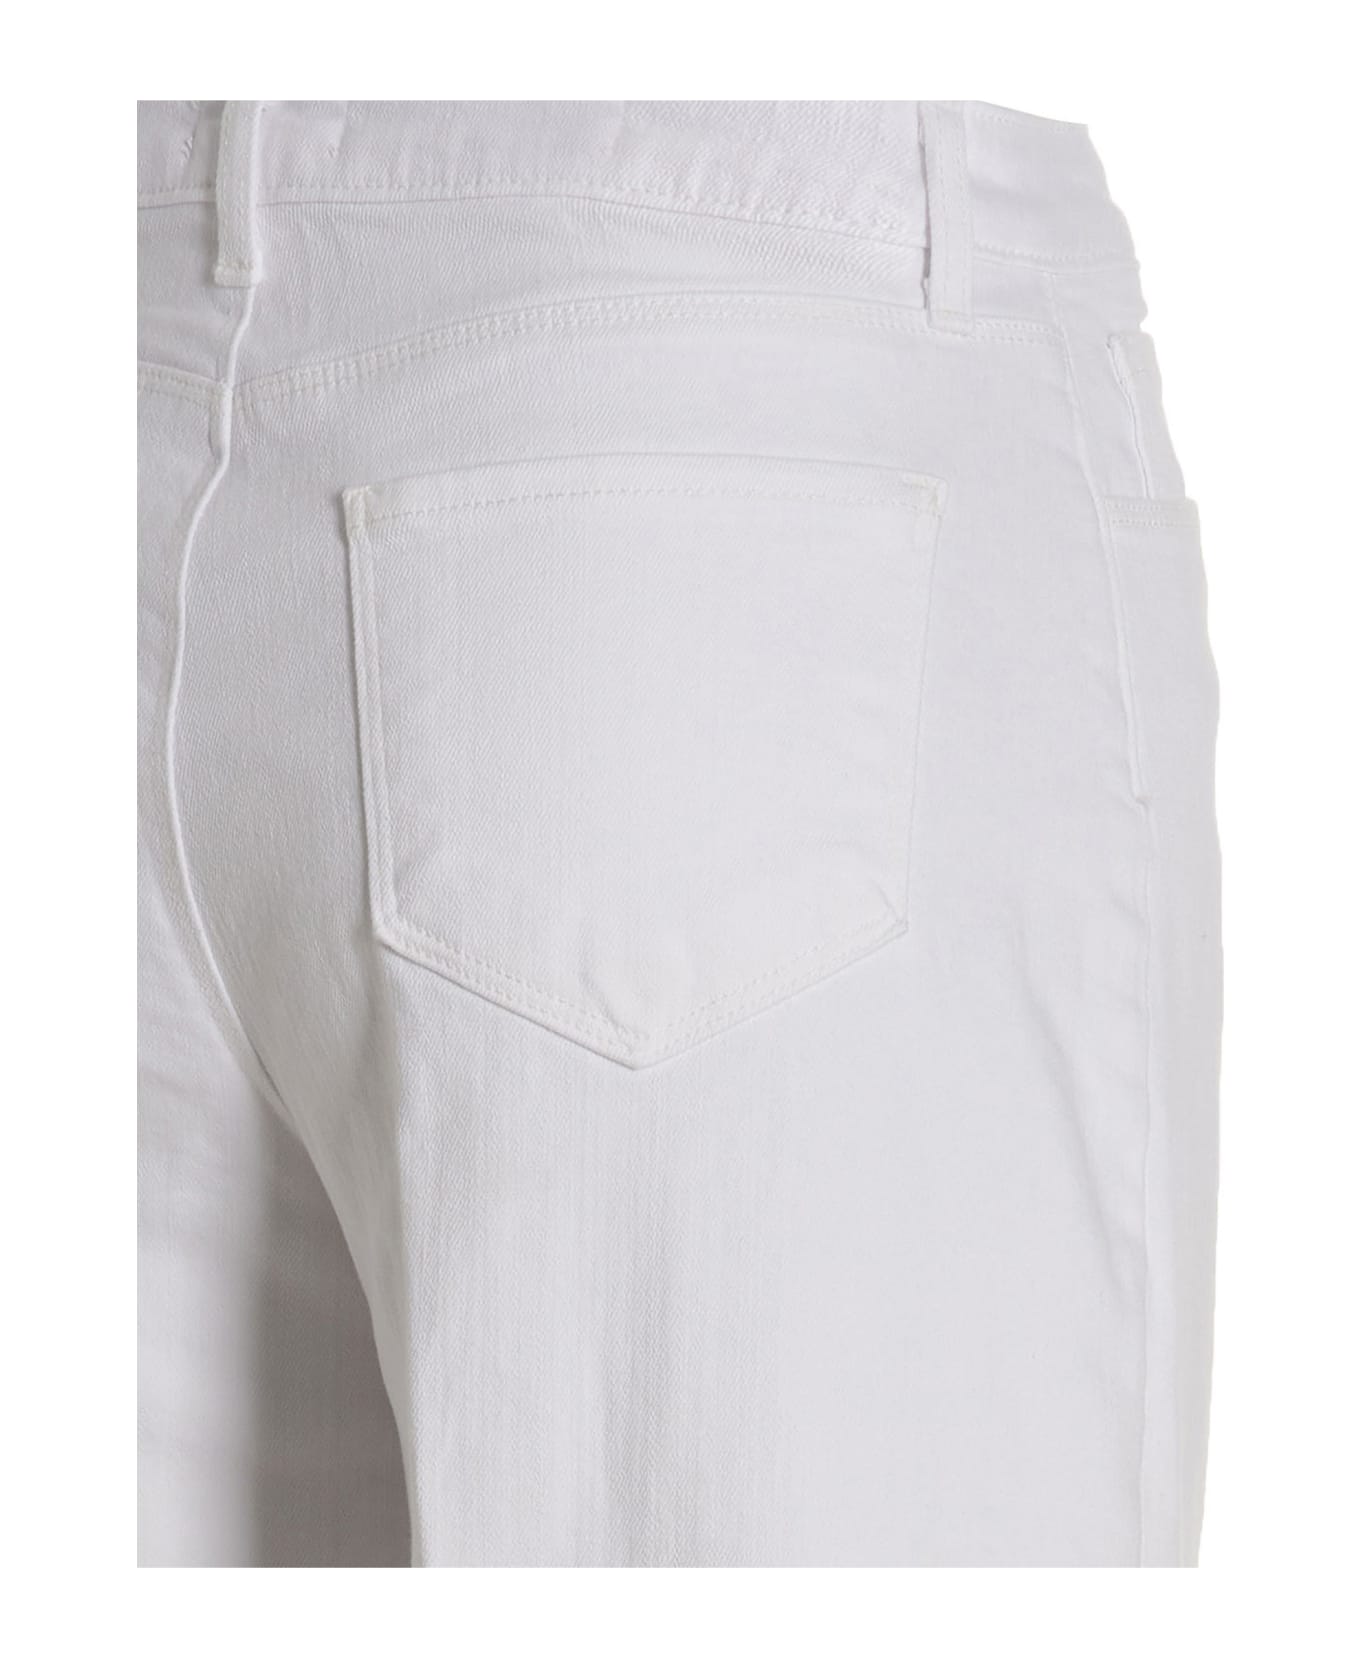 L'Agence 'sandry' Jeans - White